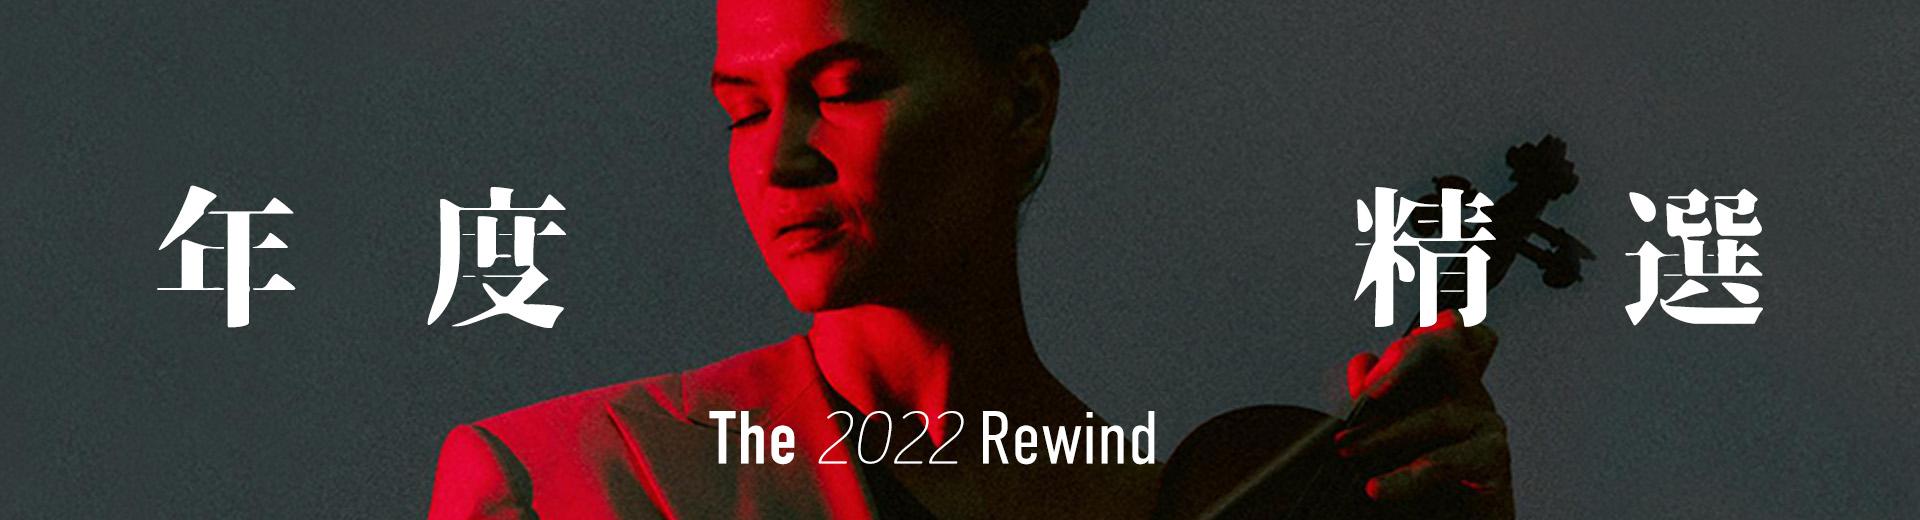 年度精選 The 2022 Rewind